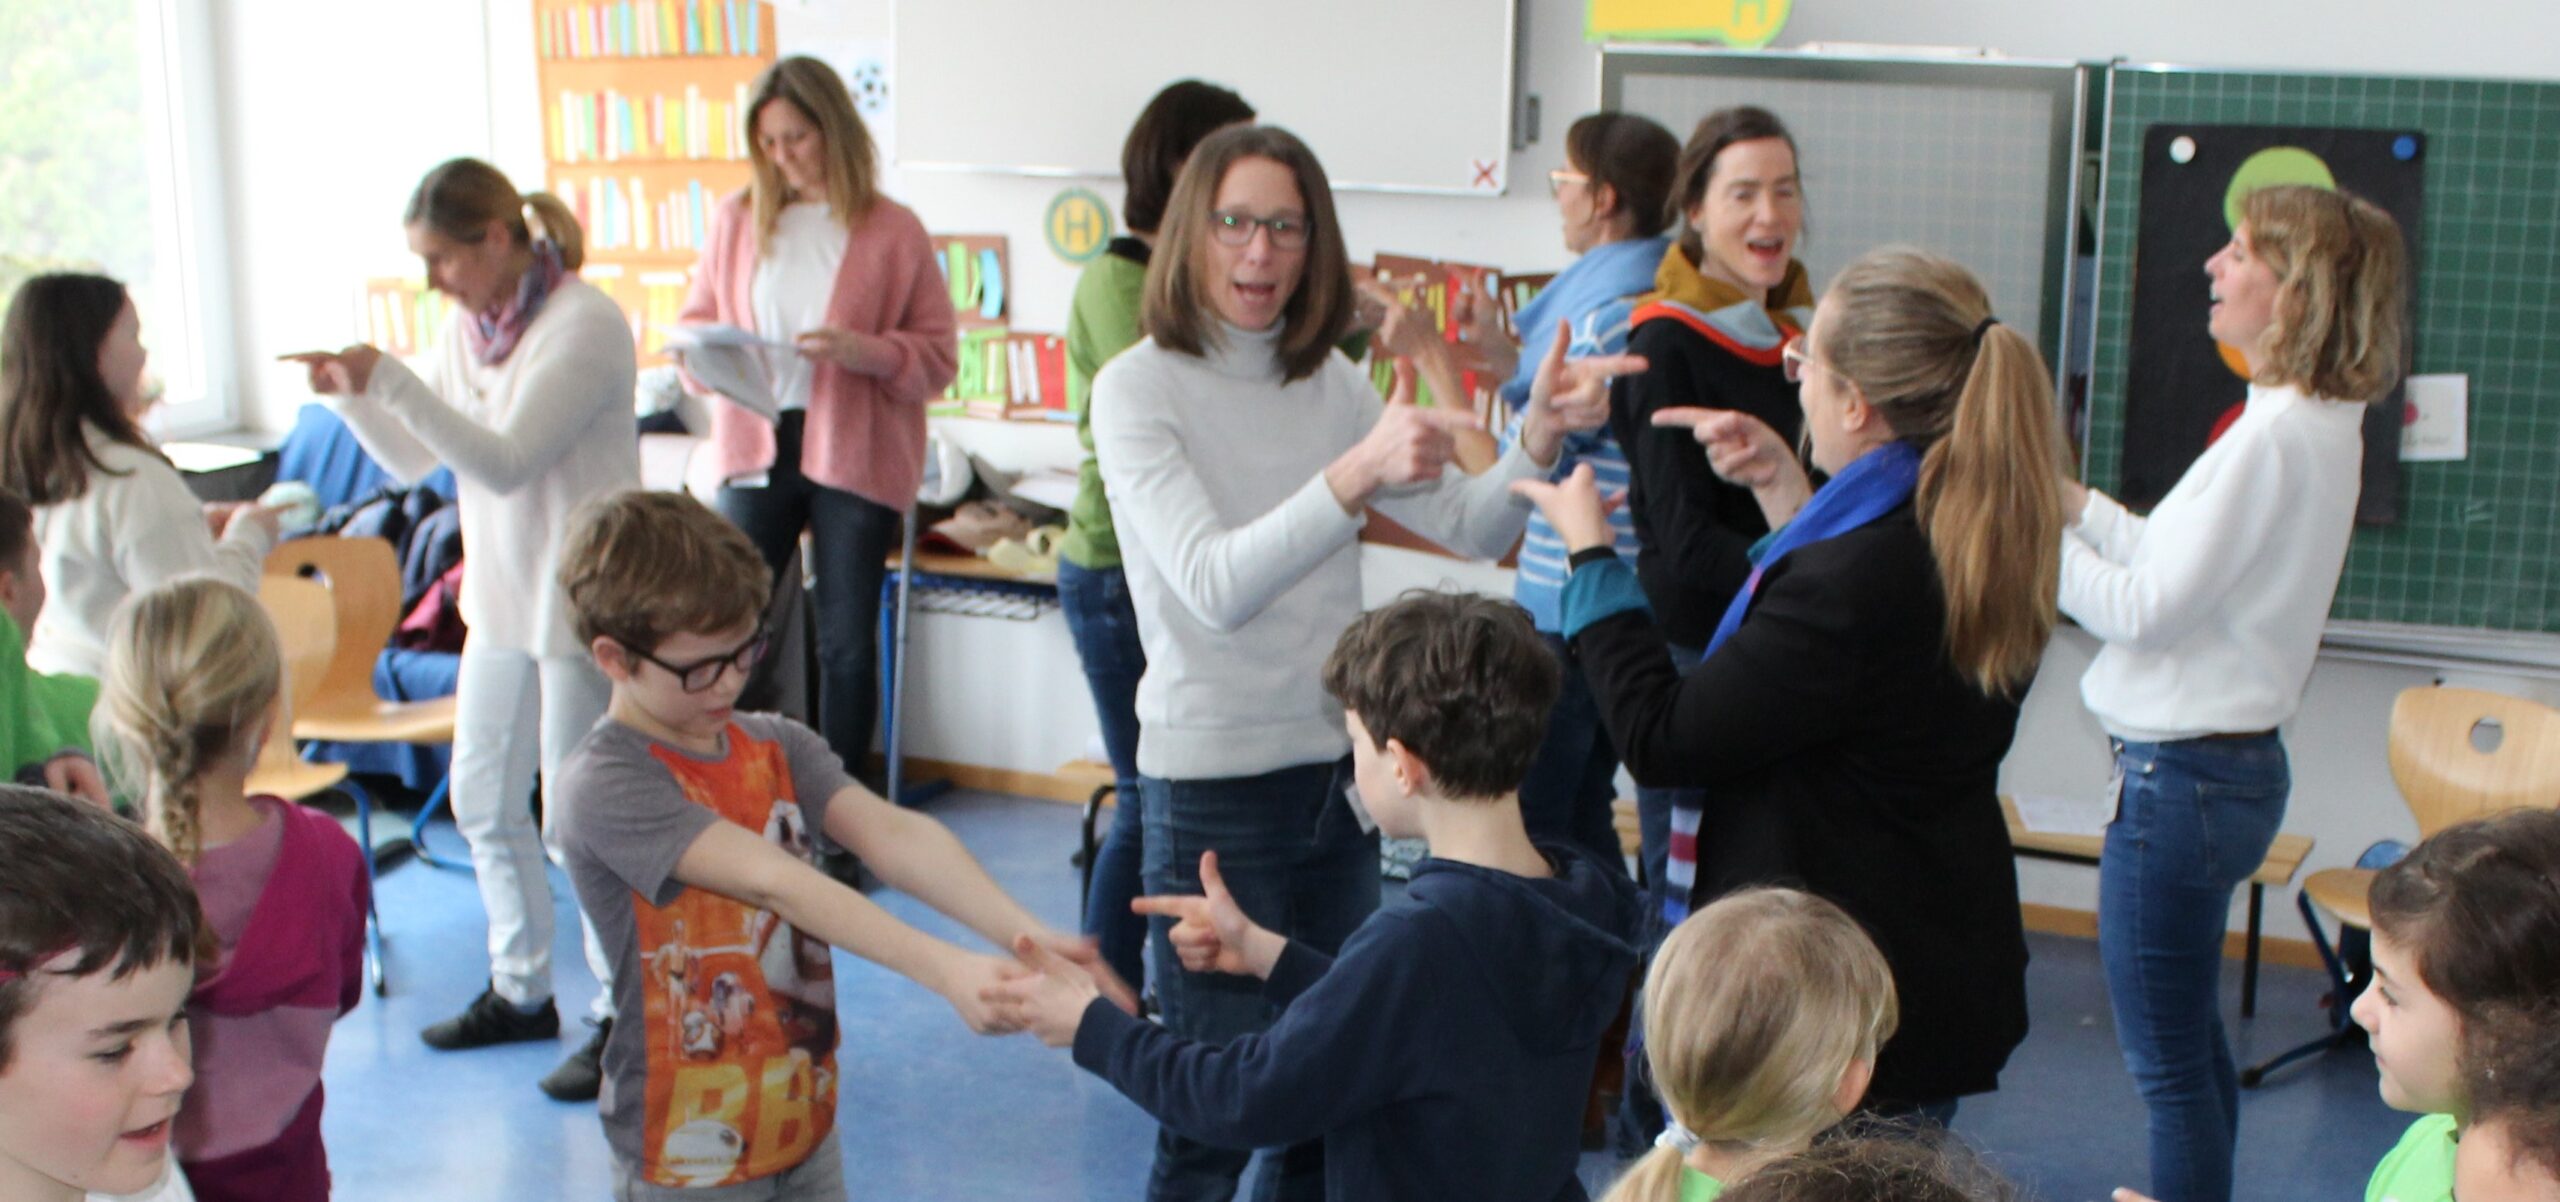 Eltern und Kinder tanzen in einem Klassenzimmer ein Freundschaftslied.